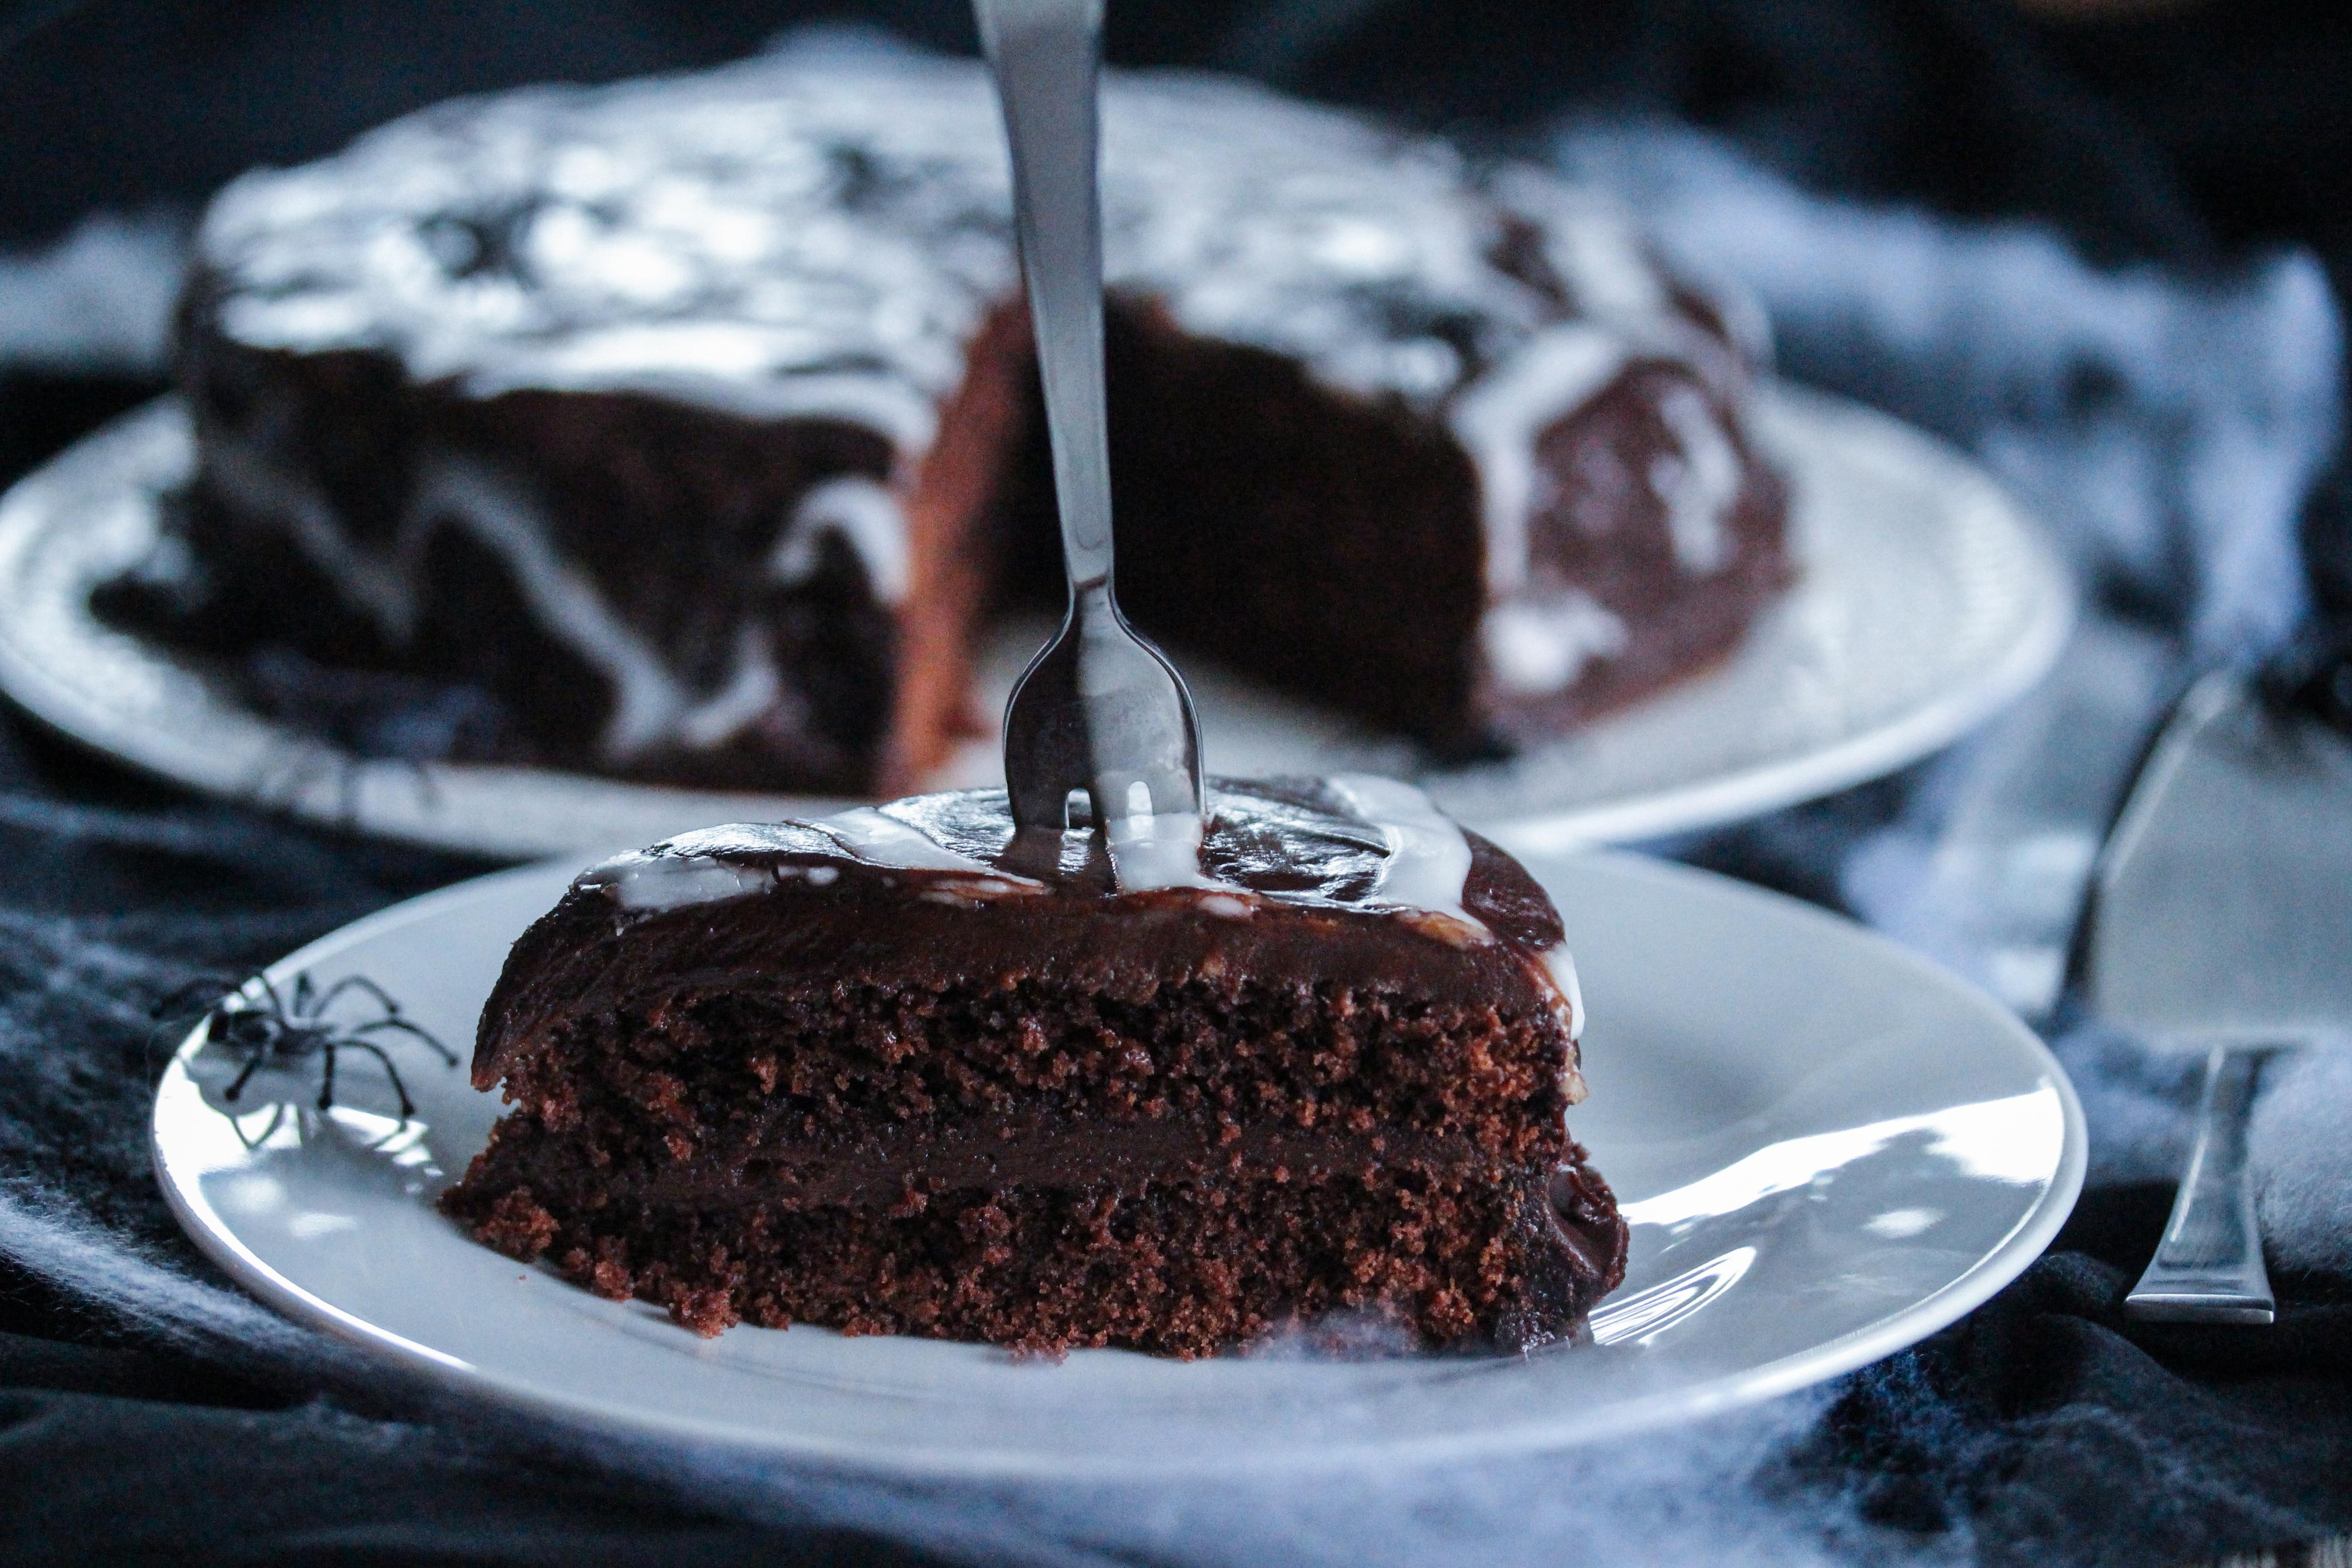 Smør sjokoladeganachen over toppen av kaken. Sprøyt deretter melisglasuren på kaken i et spiralmønster. Bruk så en tannpirker og dra den gjennom spiralen, fra midten og ut til kantene, så du får et spindelvev-mønster. 